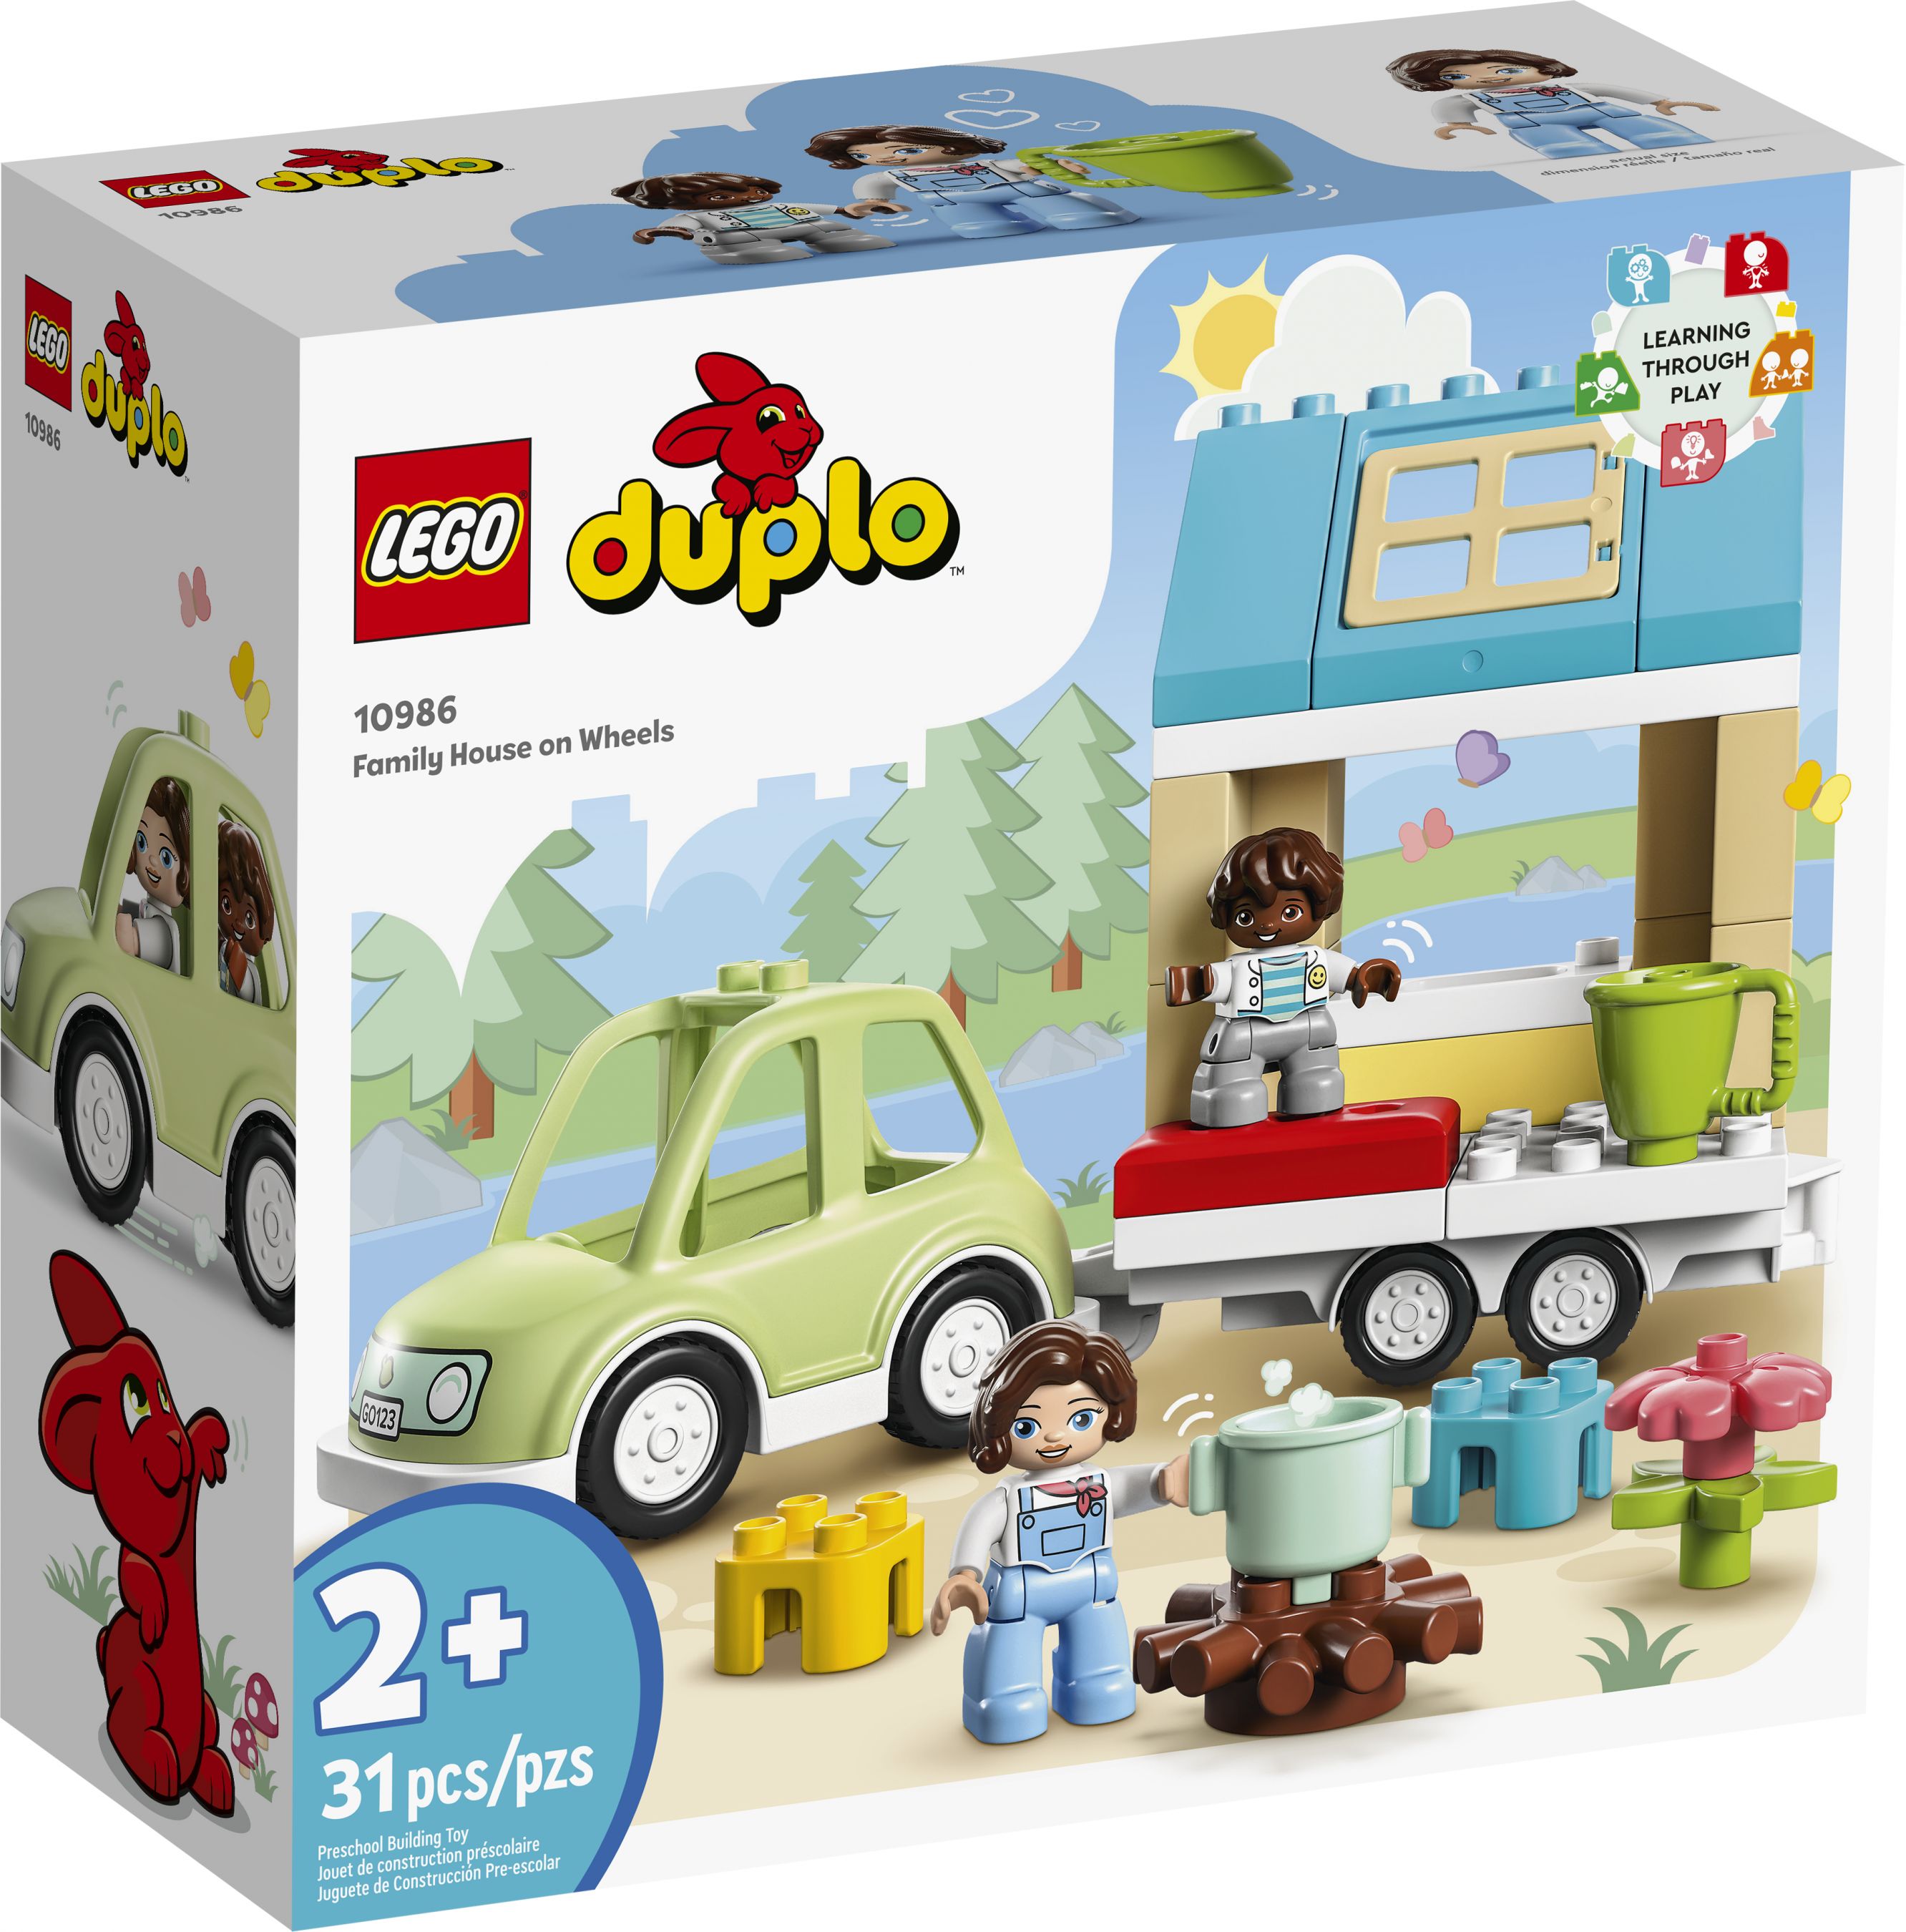 LEGO Duplo 10986 Zuhause auf Rädern LEGO_10986_Box1_v39.jpg